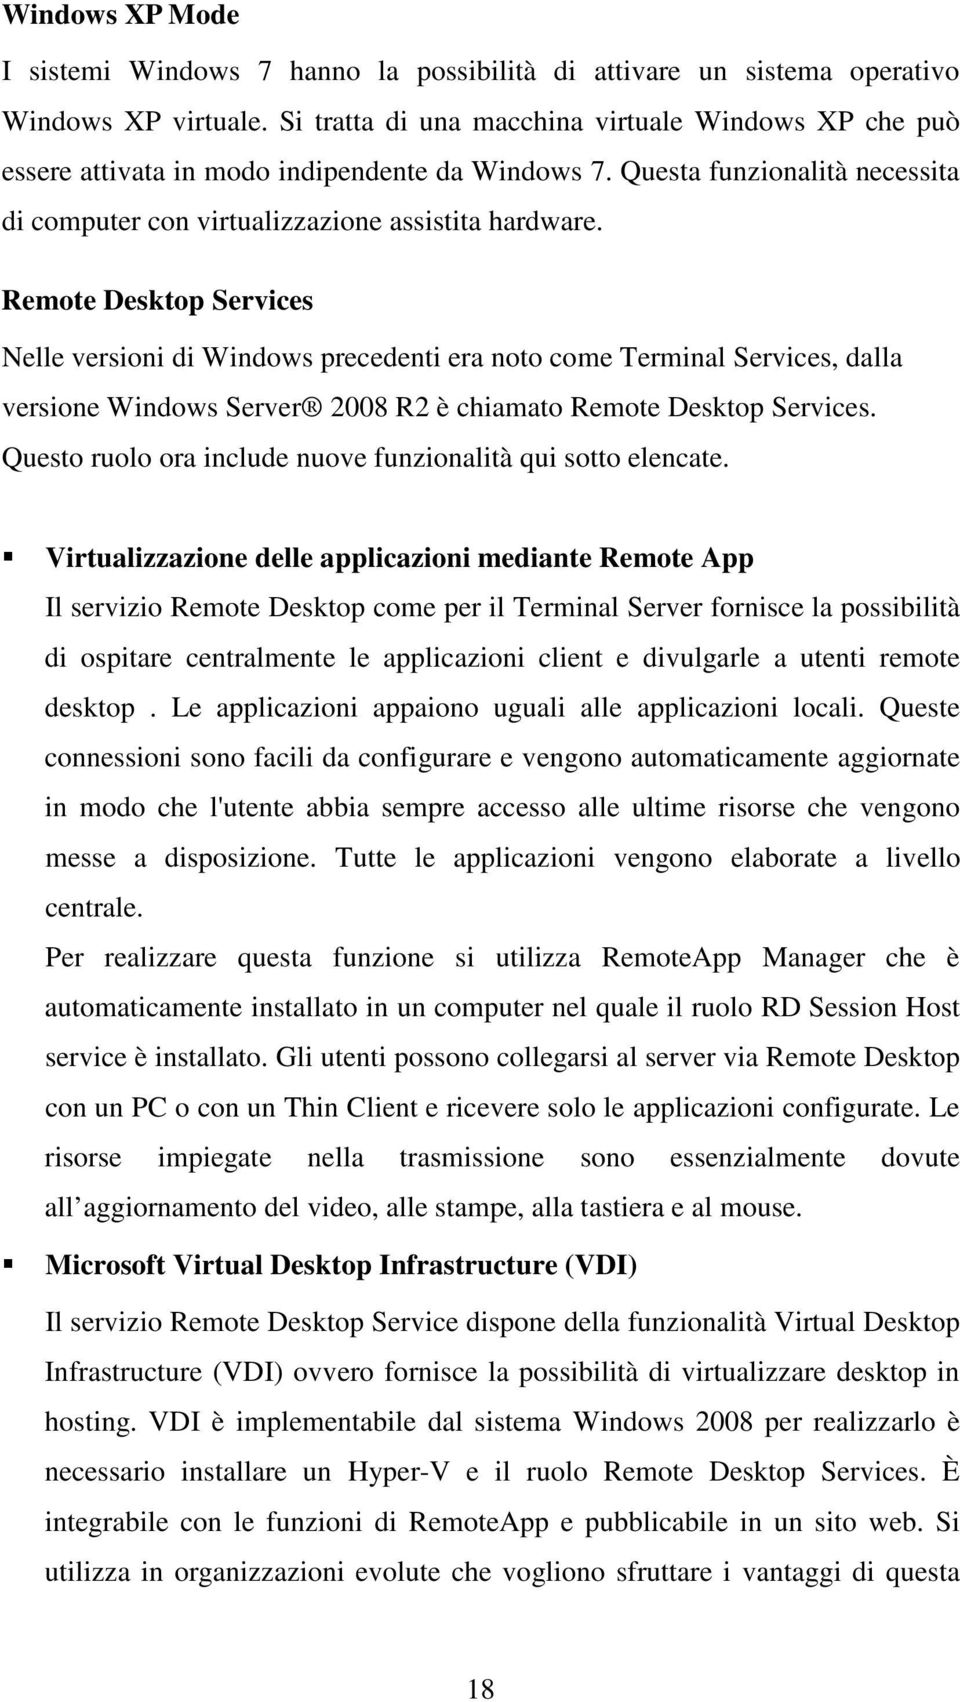 Remote Desktop Services Nelle versioni di Windows precedenti era noto come Terminal Services, dalla versione Windows Server 2008 R2 è chiamato Remote Desktop Services.